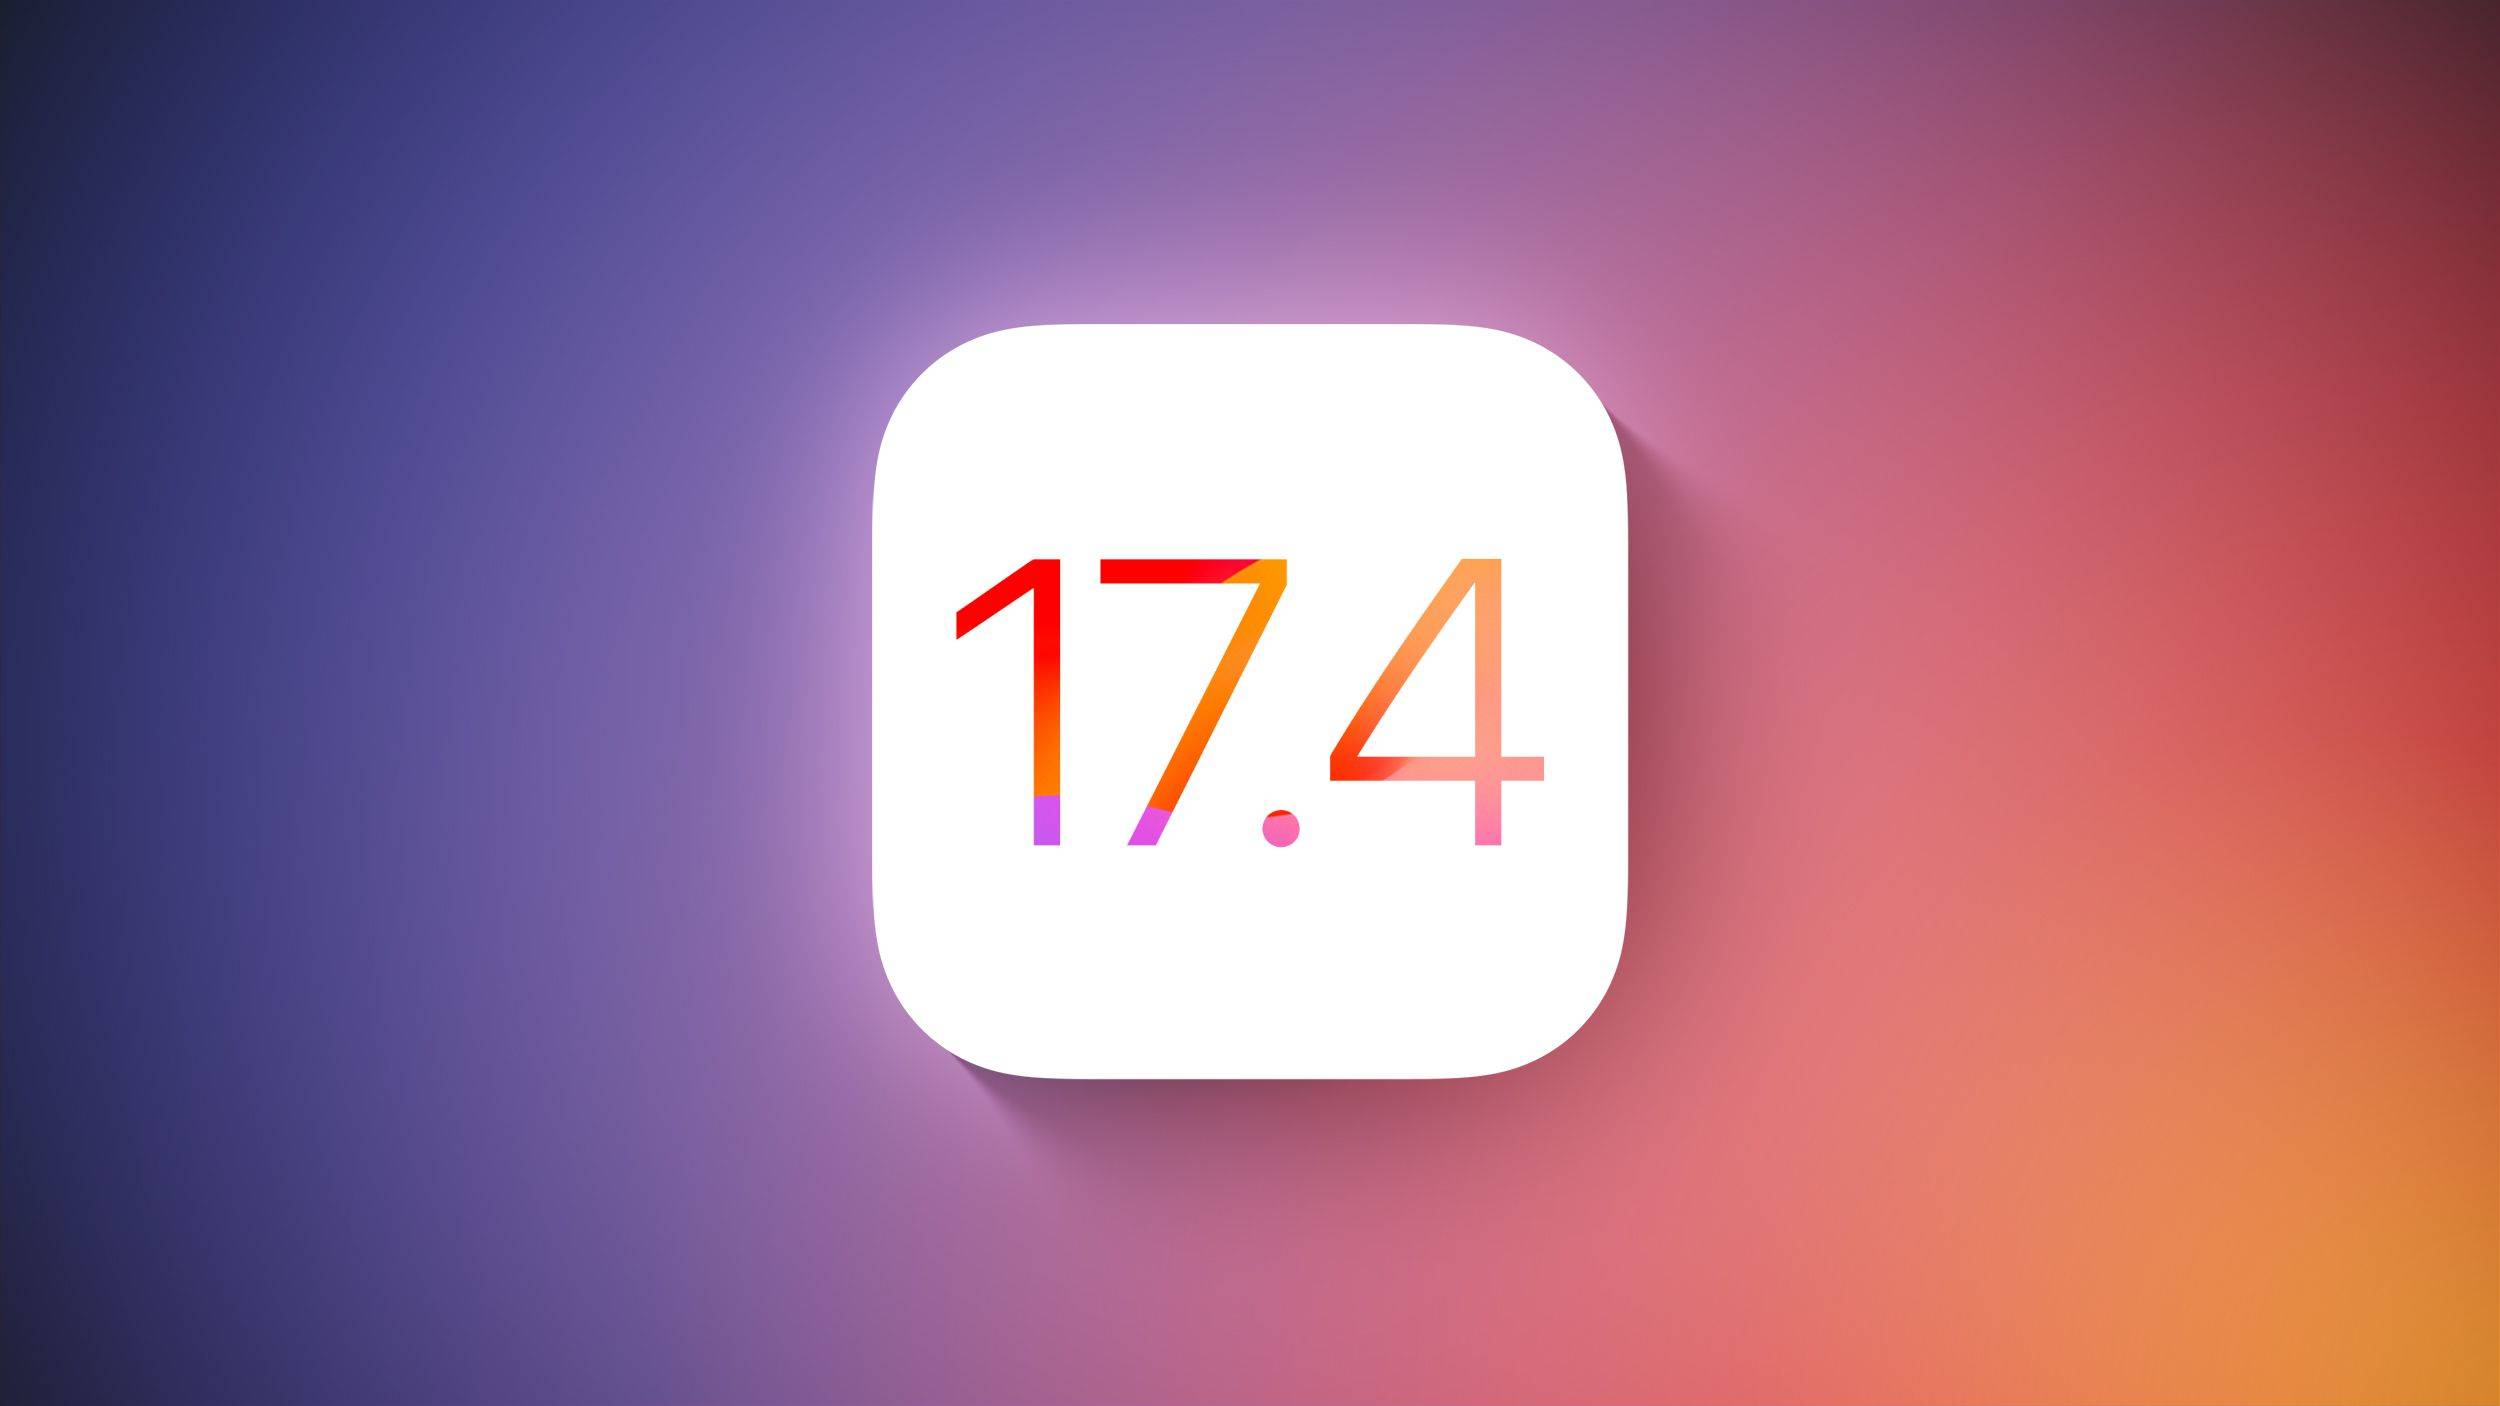 iOS 17.4 julkaisi Apple iPhone iPadin